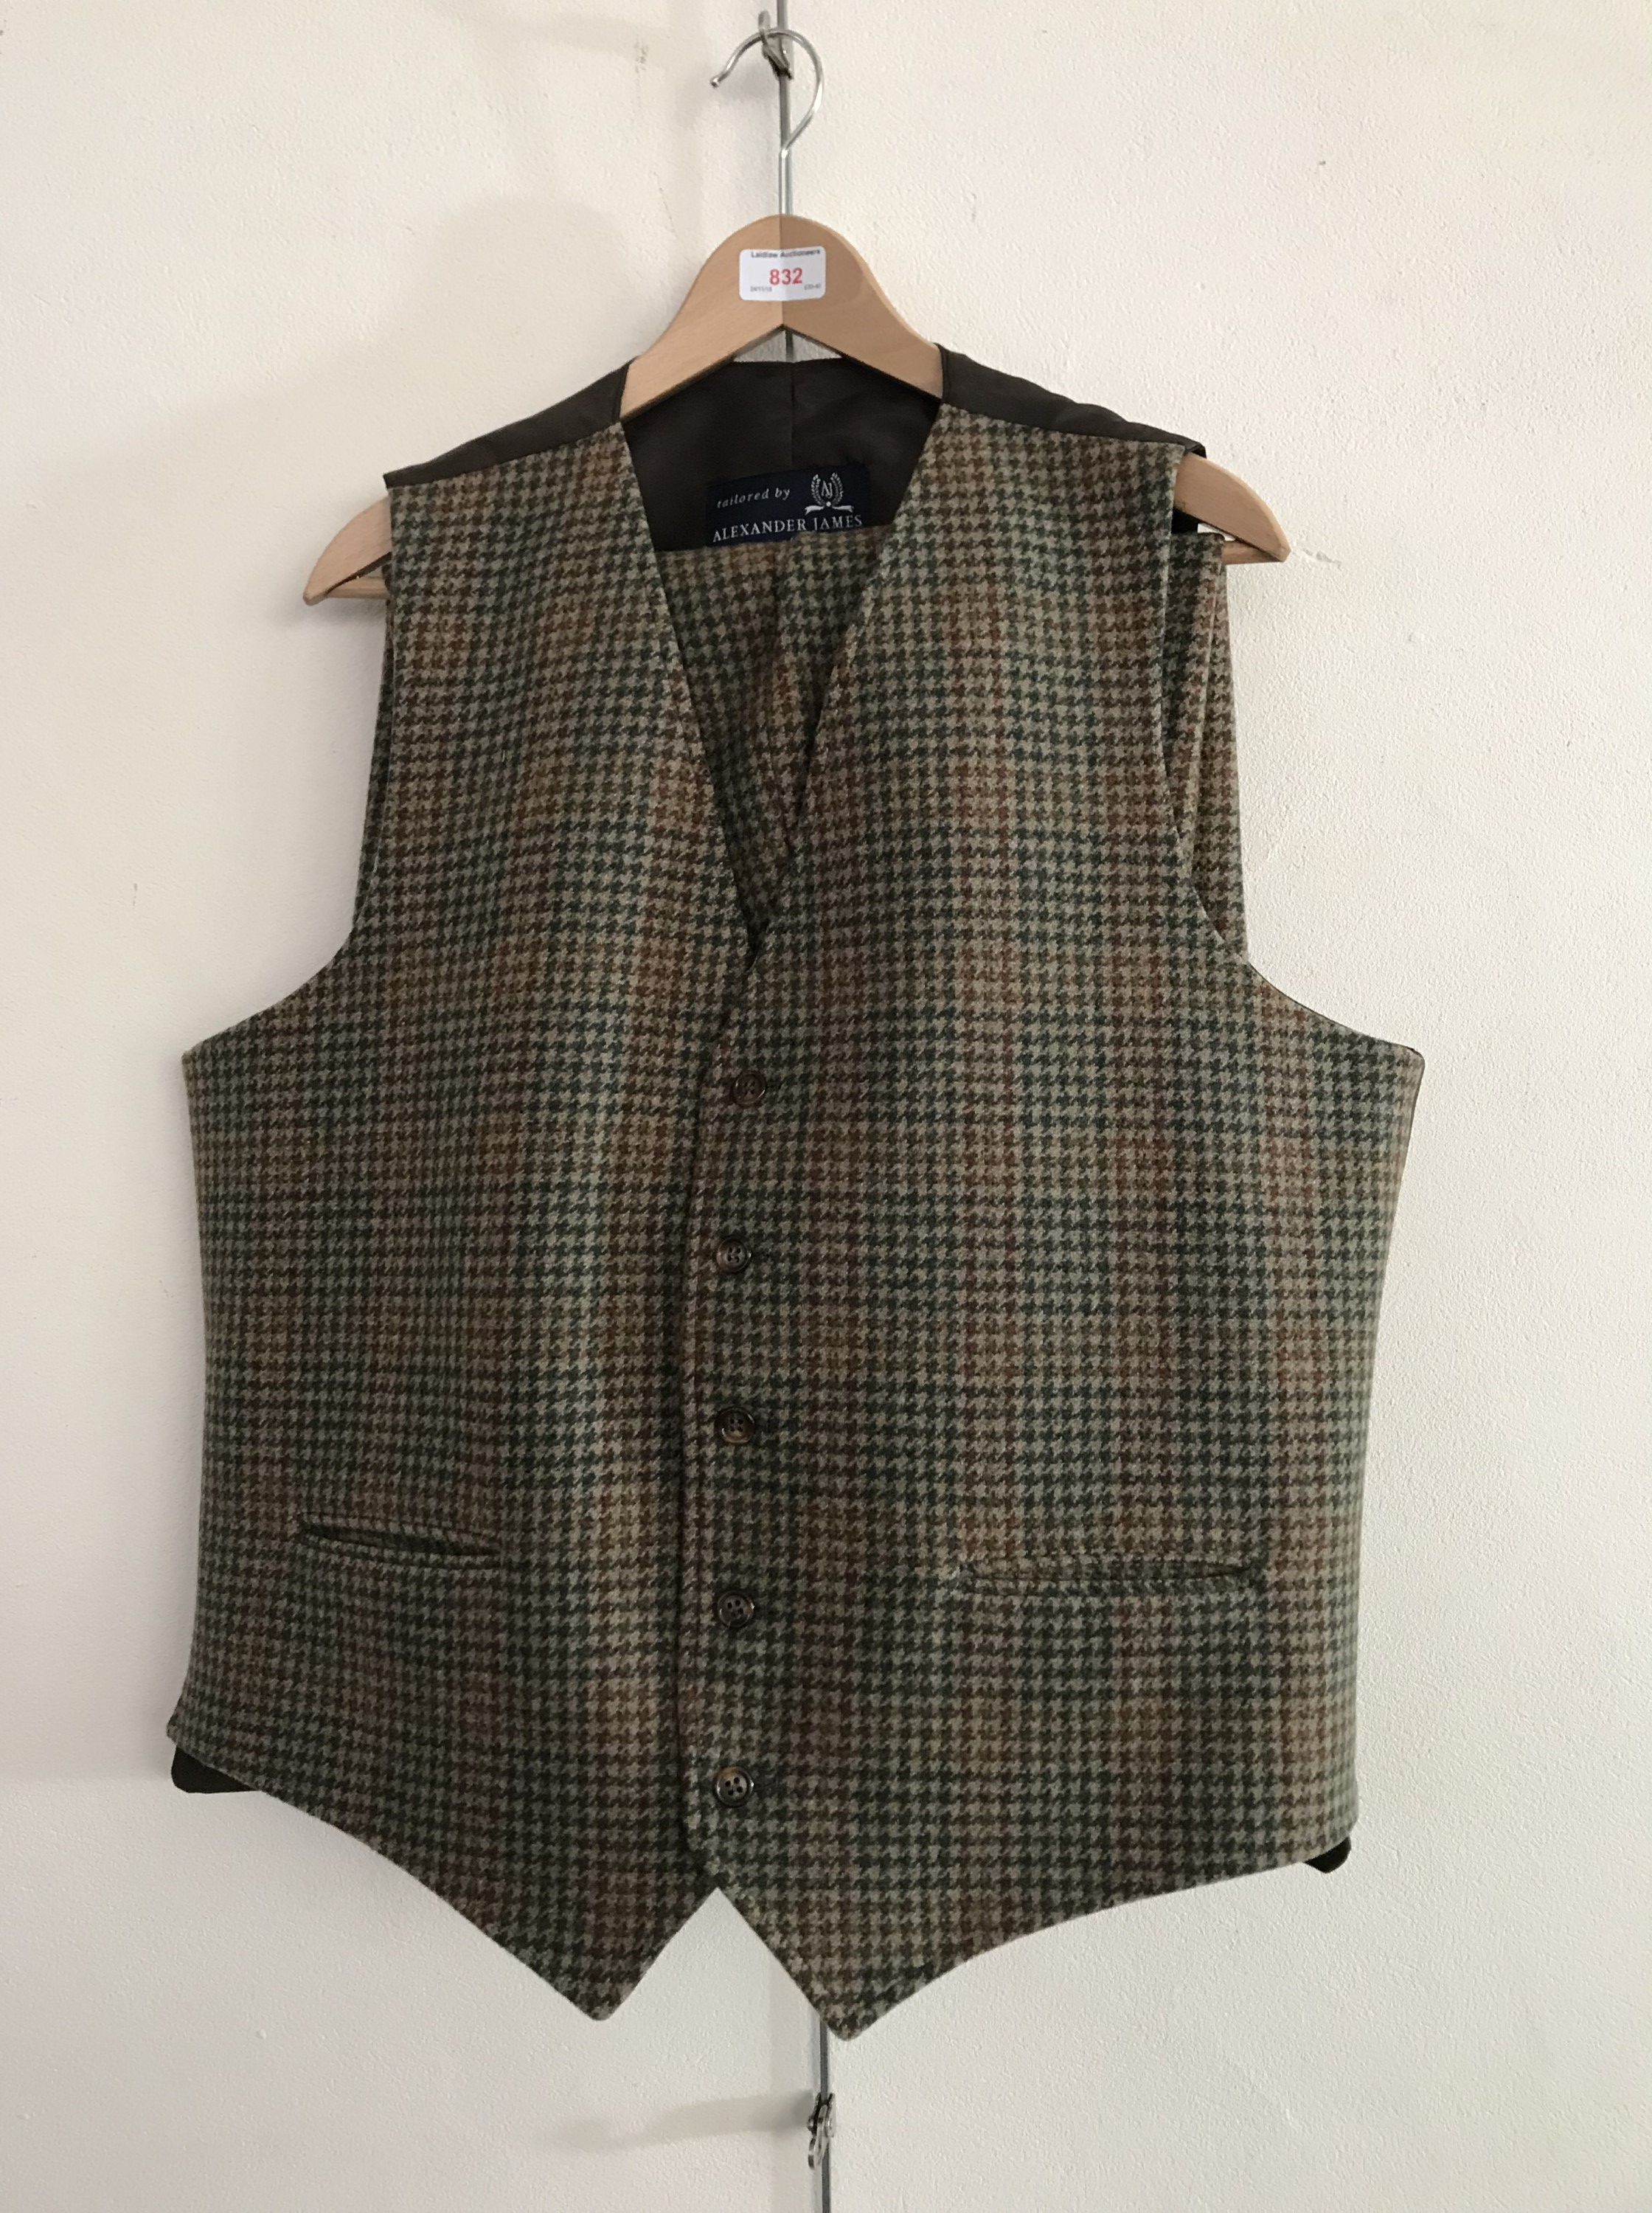 A gentleman's Alexander James tweed waistcoat and matching breeks, jacket size 46